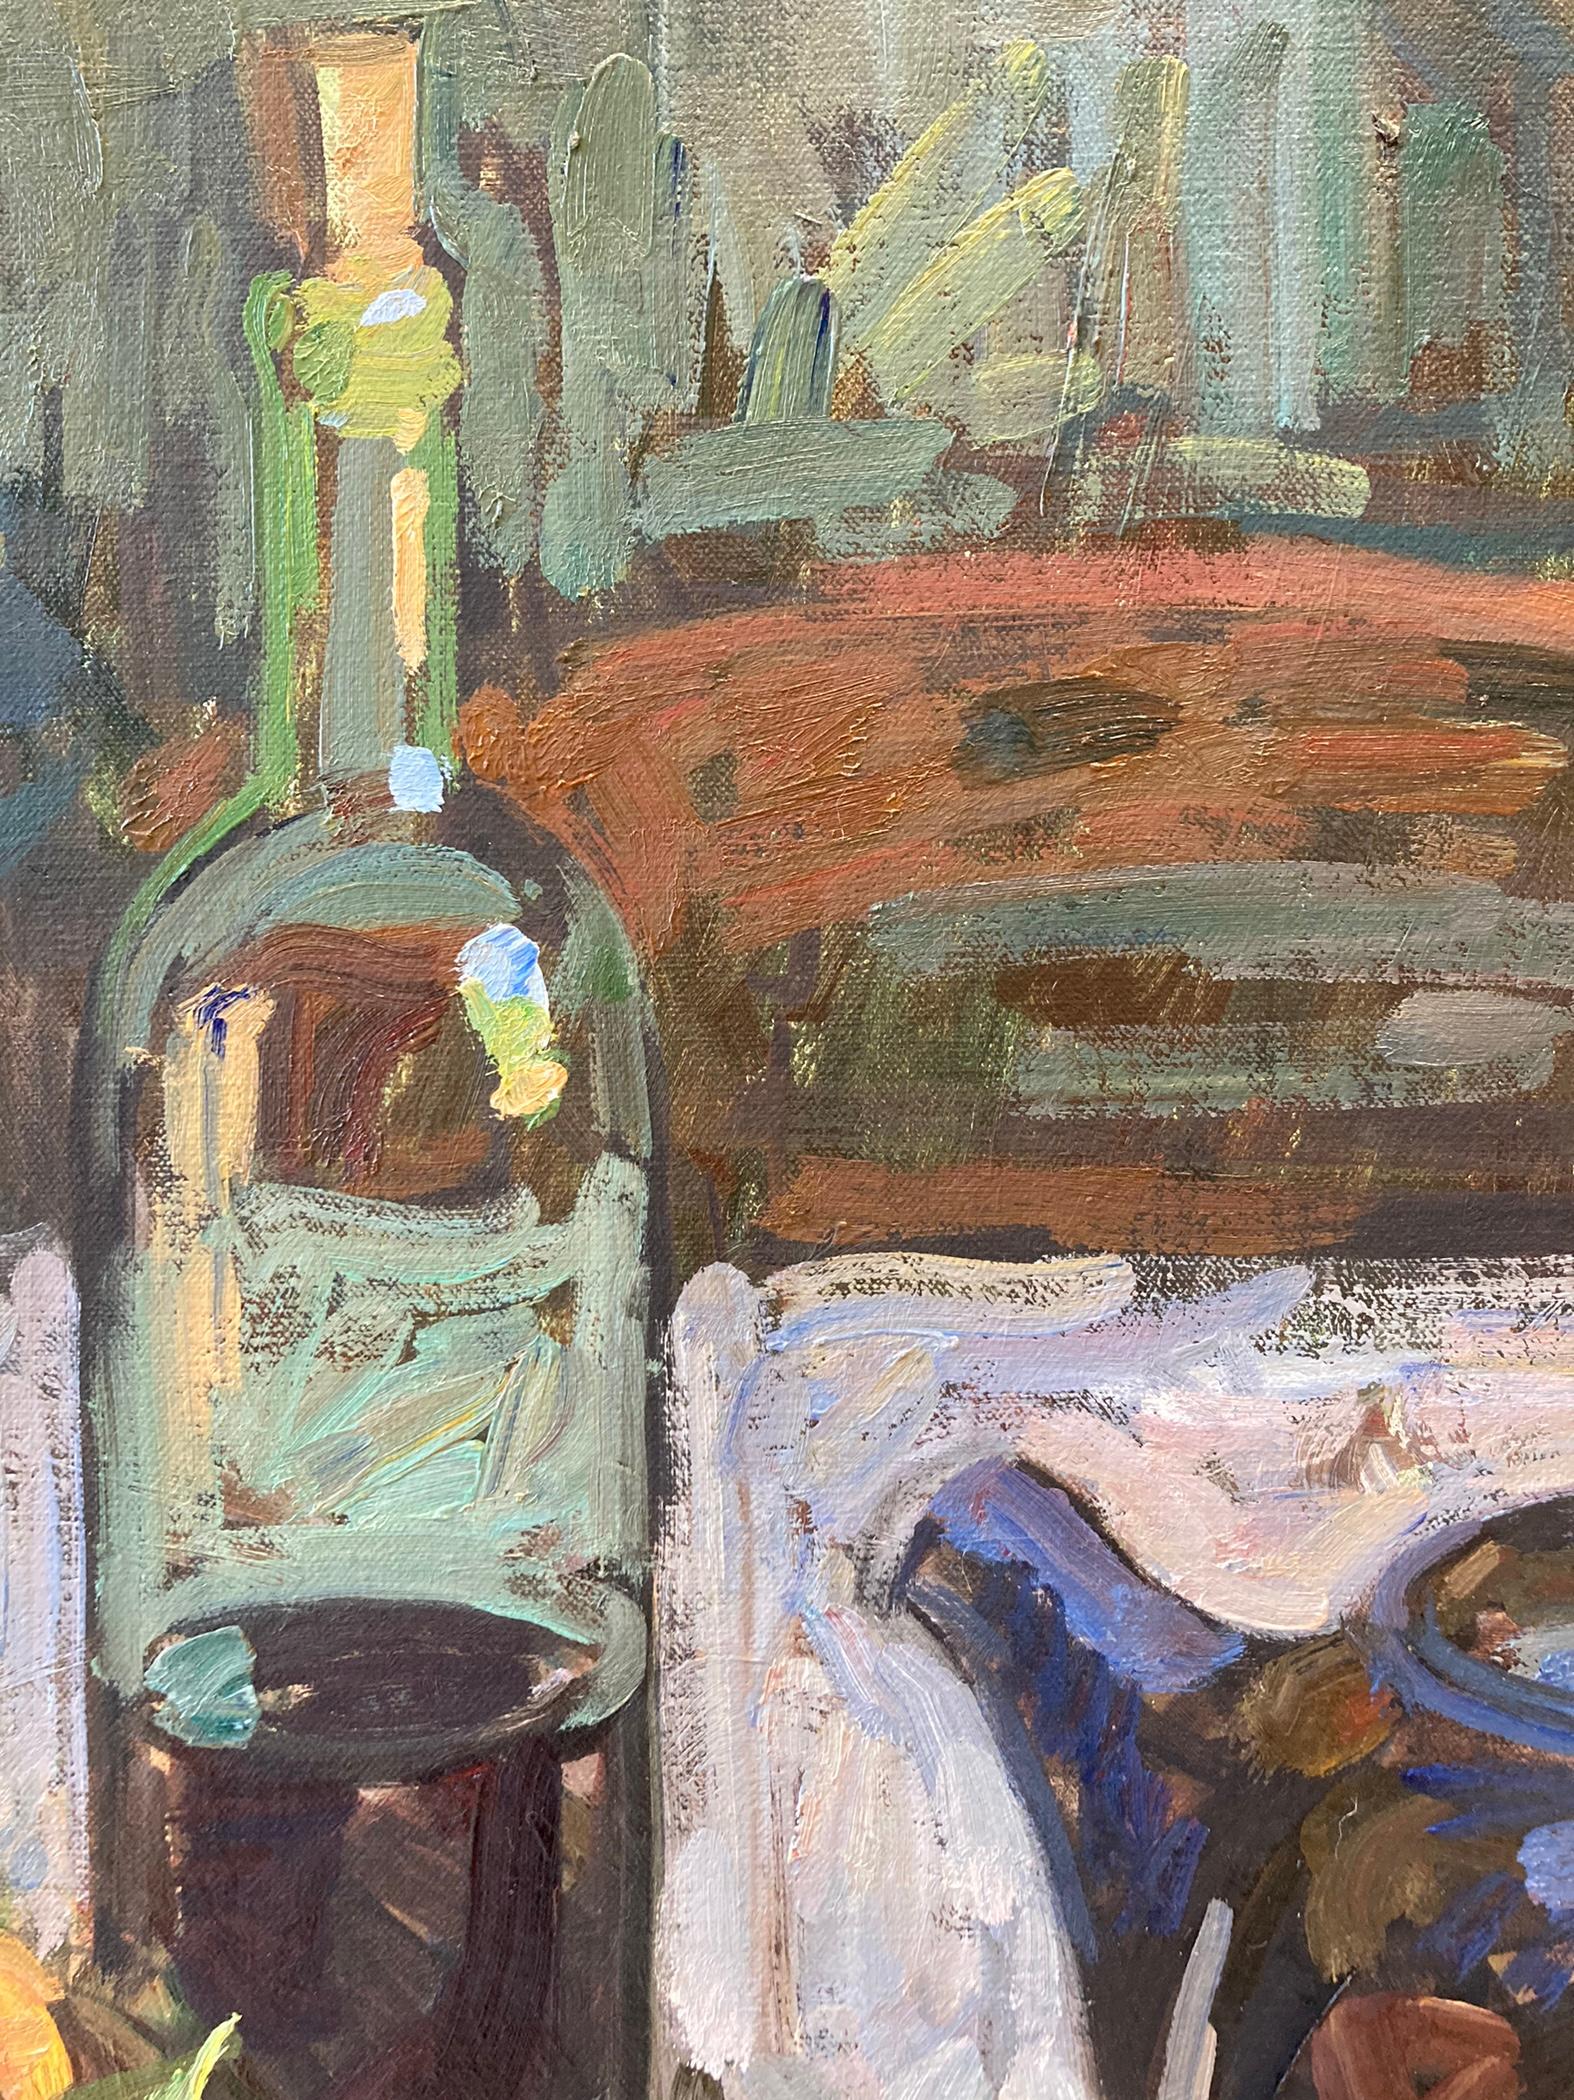 Une peinture impressionniste de la théière bleue reconnaissable de Fenske reflétant une fenêtre avec vue sur la campagne toscane. Un verre et une bouteille de vin, ainsi qu'un panier d'abricots complètent la composition. Le blanc de la nappe reflète